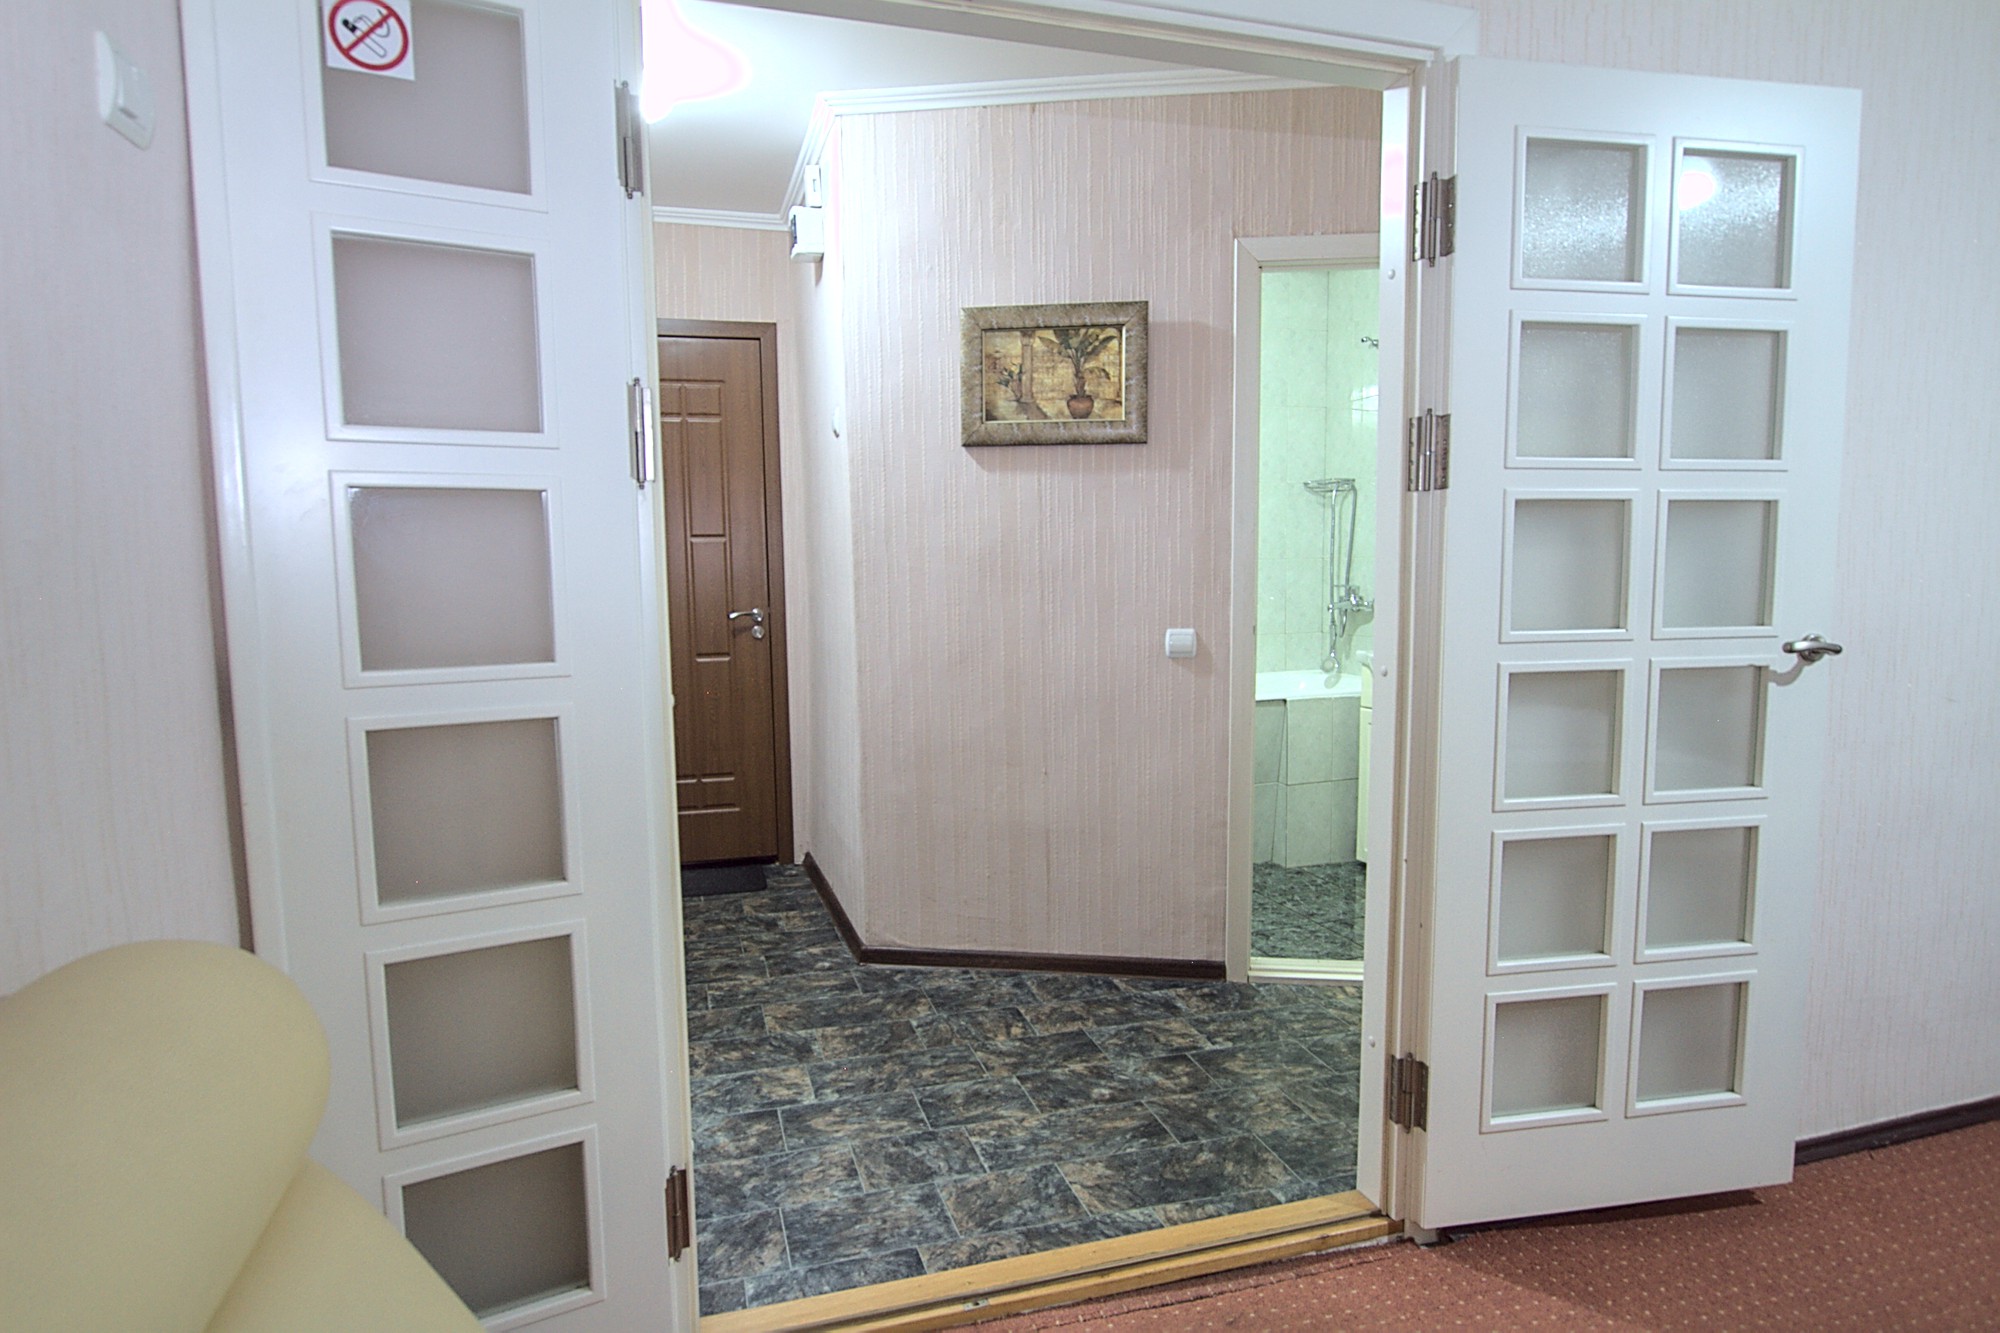 1 комната в аренду в Кишиневе - Chisinau, Grigore Vieru Blvd 14